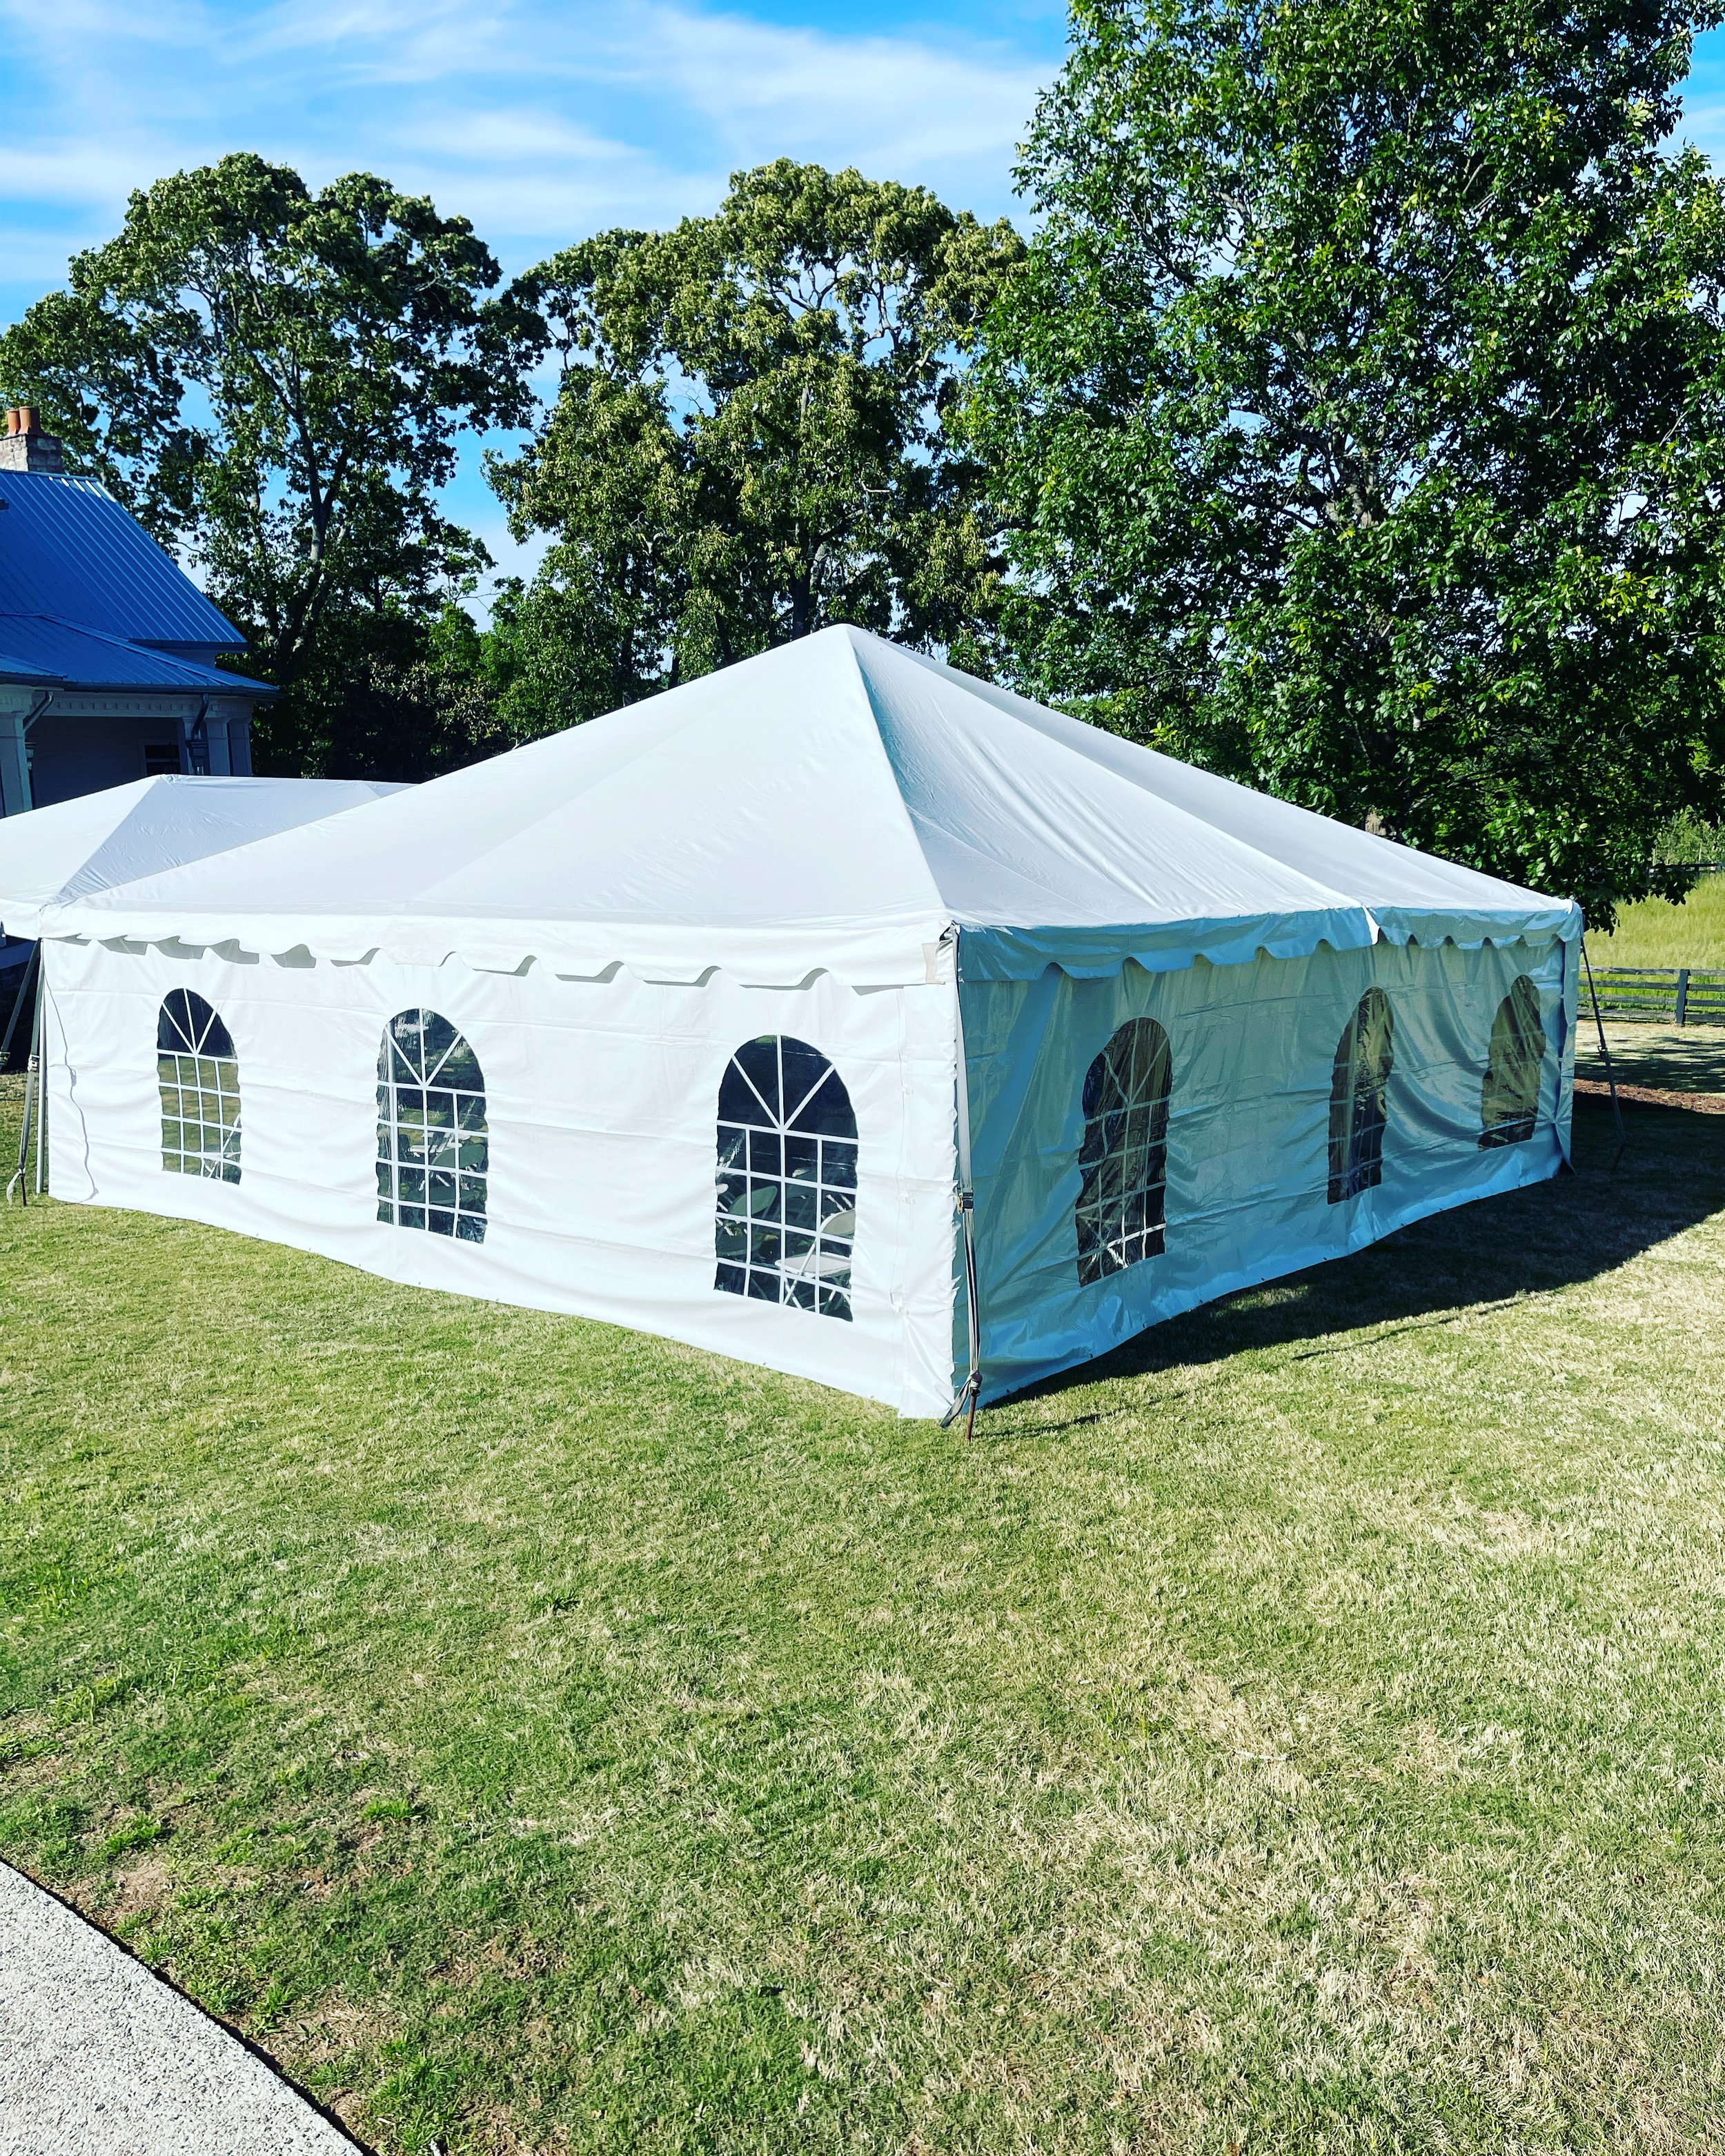 30x30 engineered frame tent rentals - Cincinnati Event Rentals